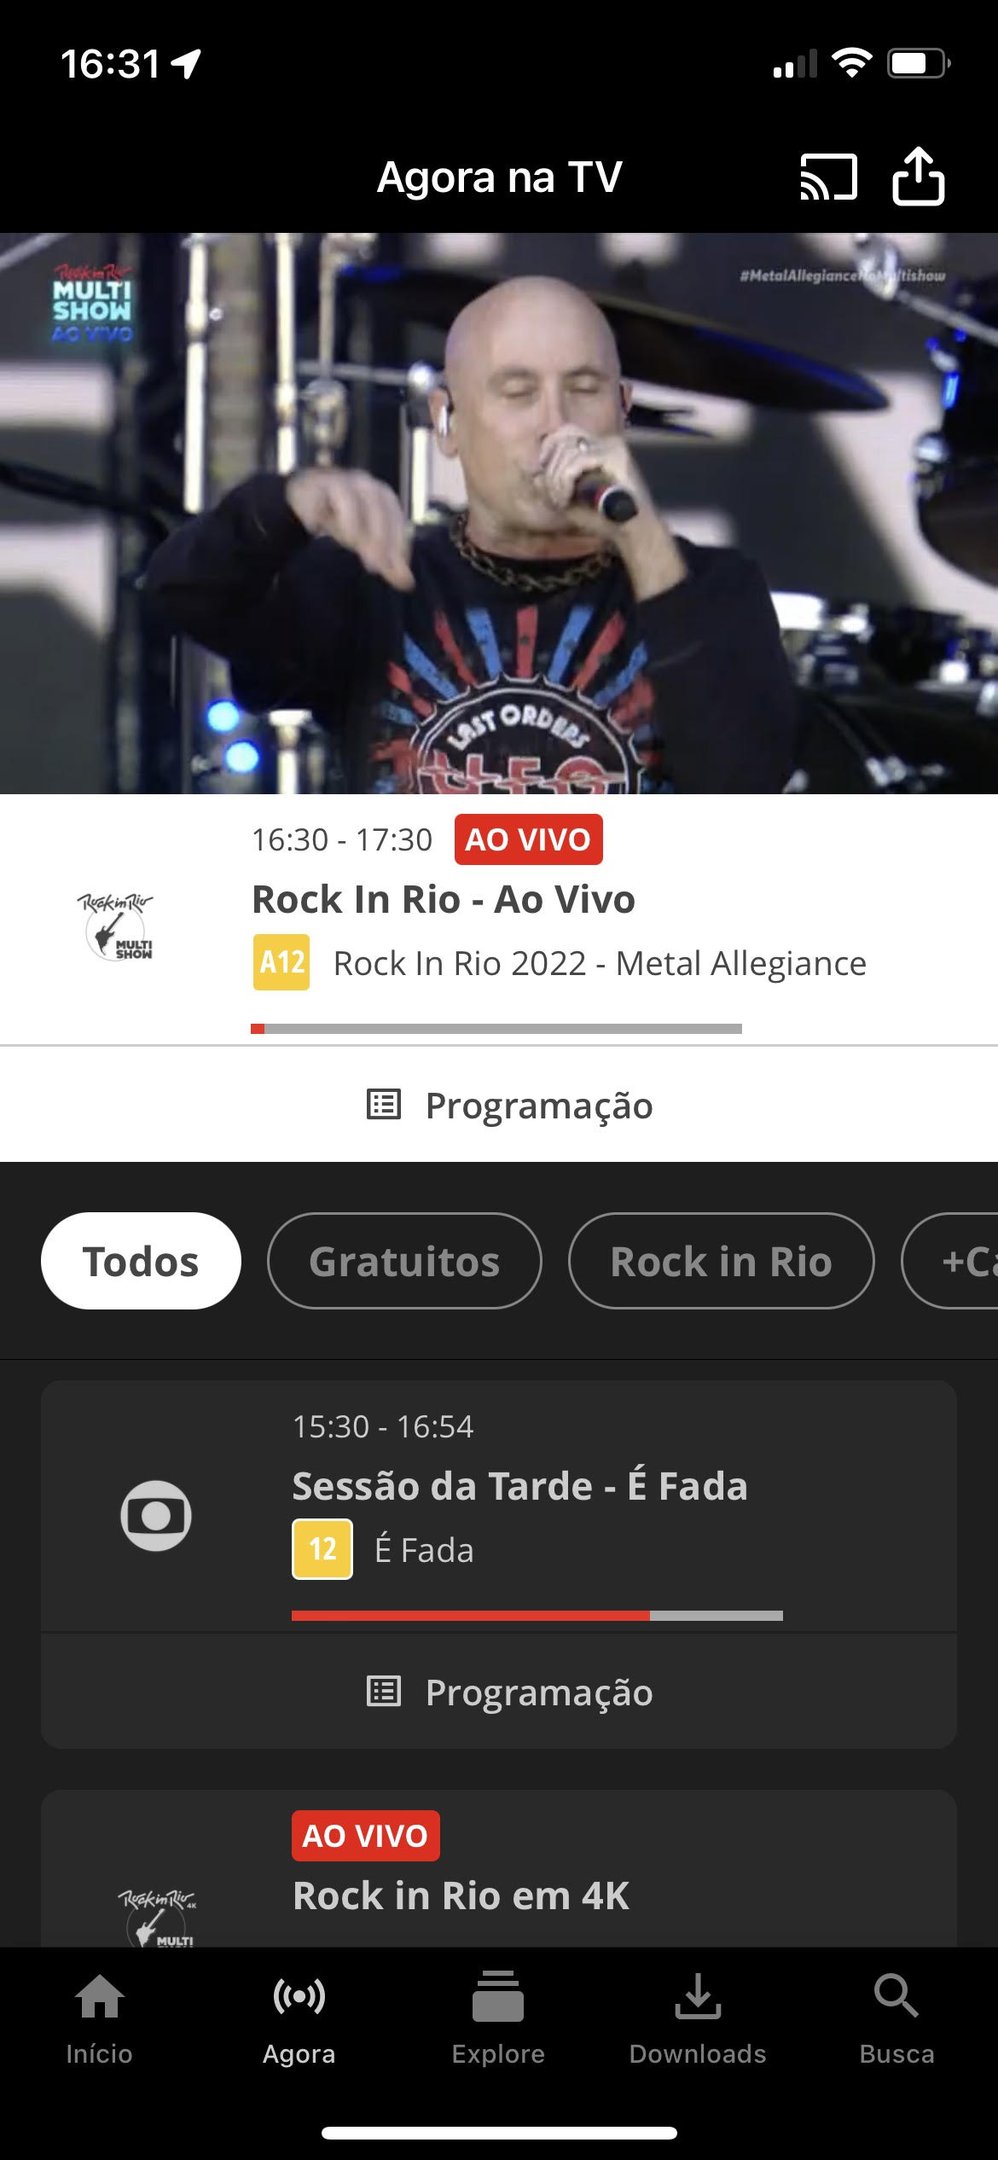 Agora na Tv Rock In Rio